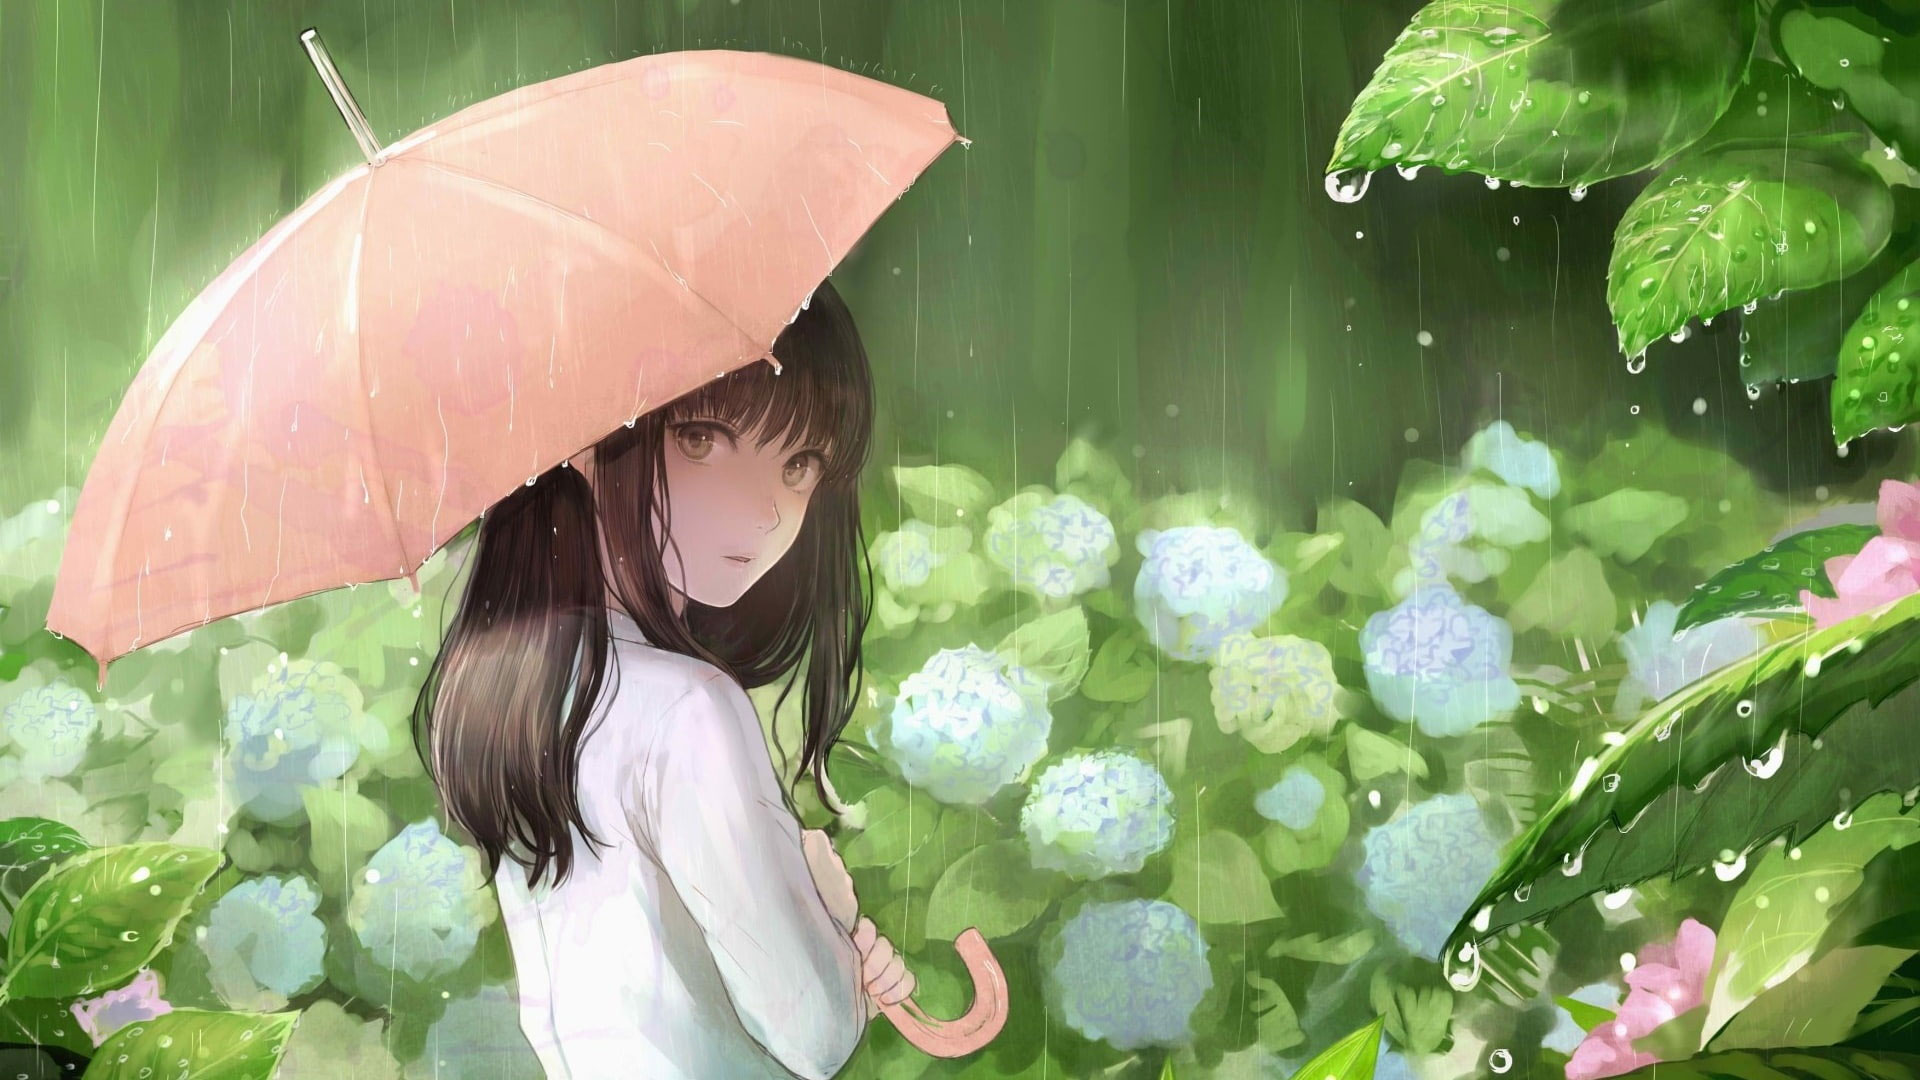 Wallpaper Flowers, Green, Anime Girl, Rainy Day, Anime Art • Wallpaper For You